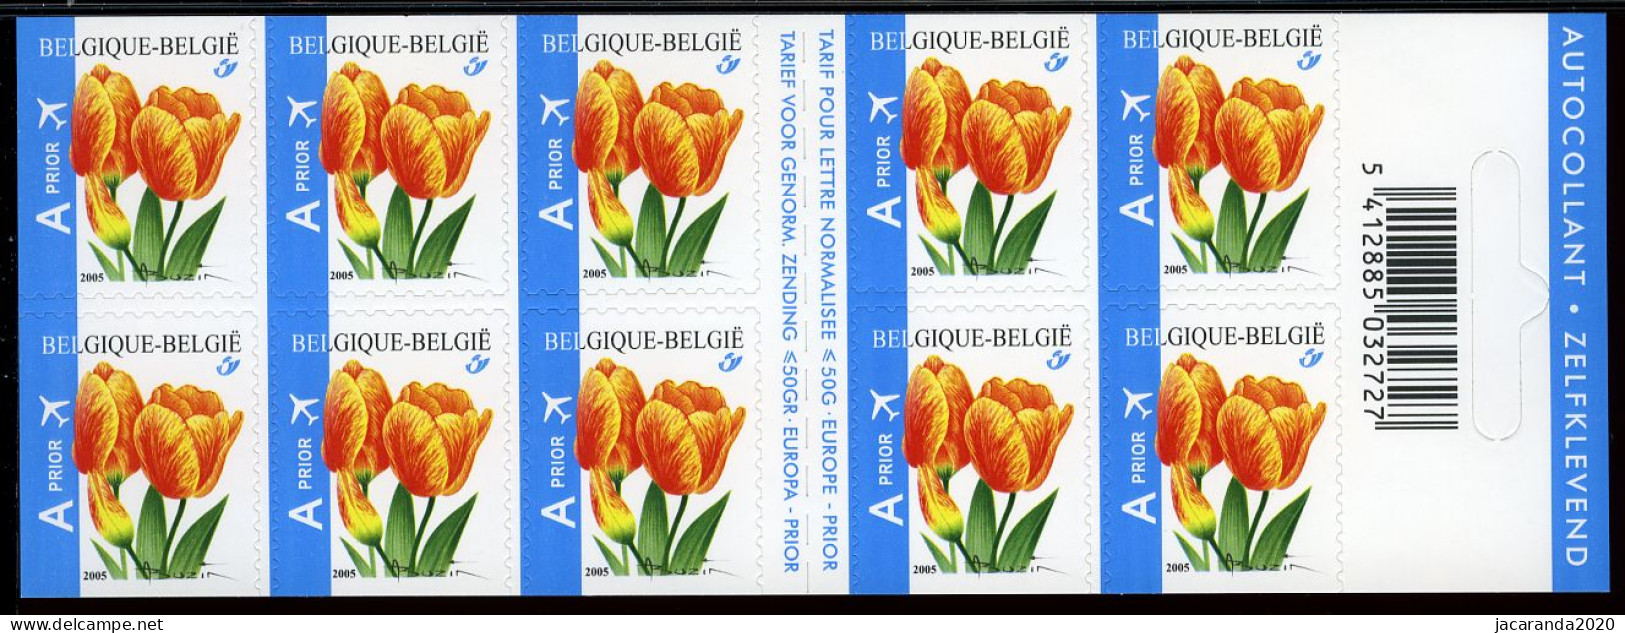 België B54 - Bloemen - Fleurs - Tulpen - Oranje Tulp - André Buzin - Zelfklevend - Autocollants - Validité Perm. - 2005 - 1997-… Permanente Geldigheid [B]